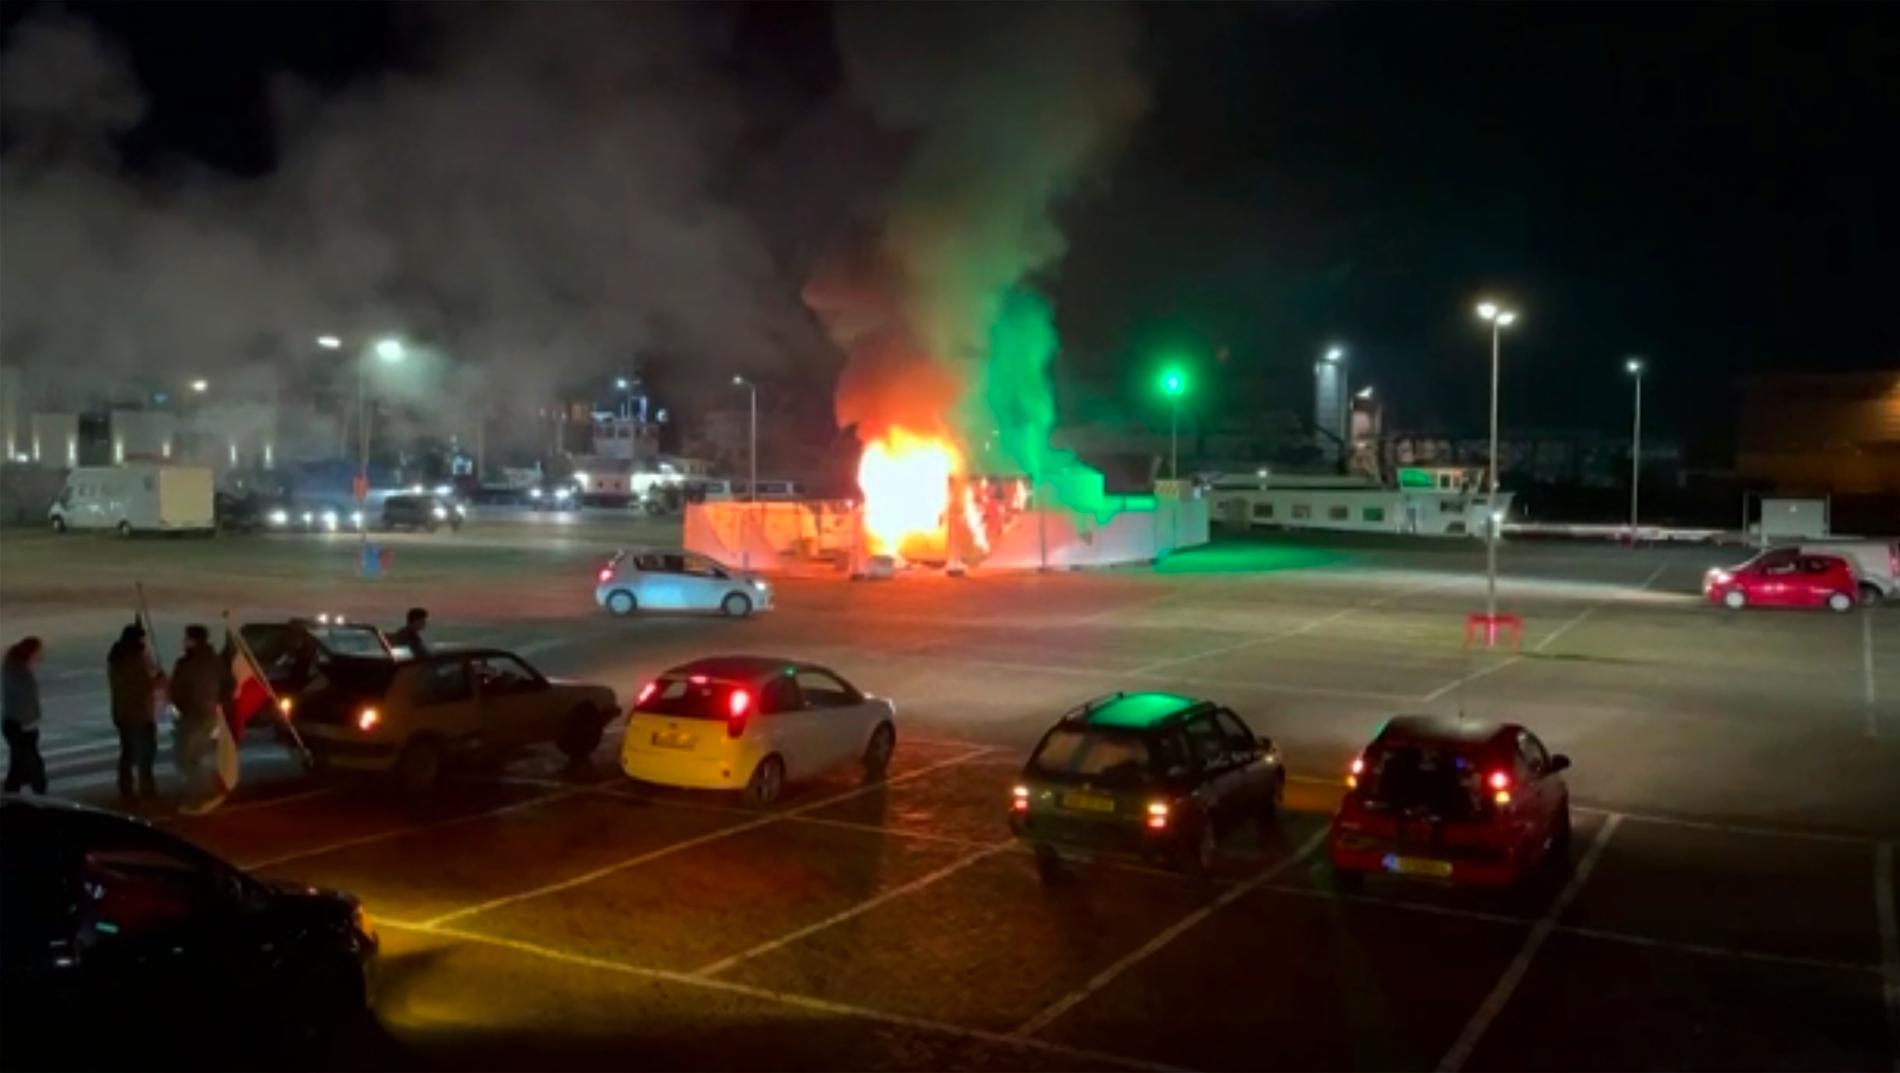 Ett testcenter för covid-19 sattes i brand i den holländska fiskebyn Urk i lördags. Samtidigt drabbade demonstranter och polis samman i flera andra städer i landet.